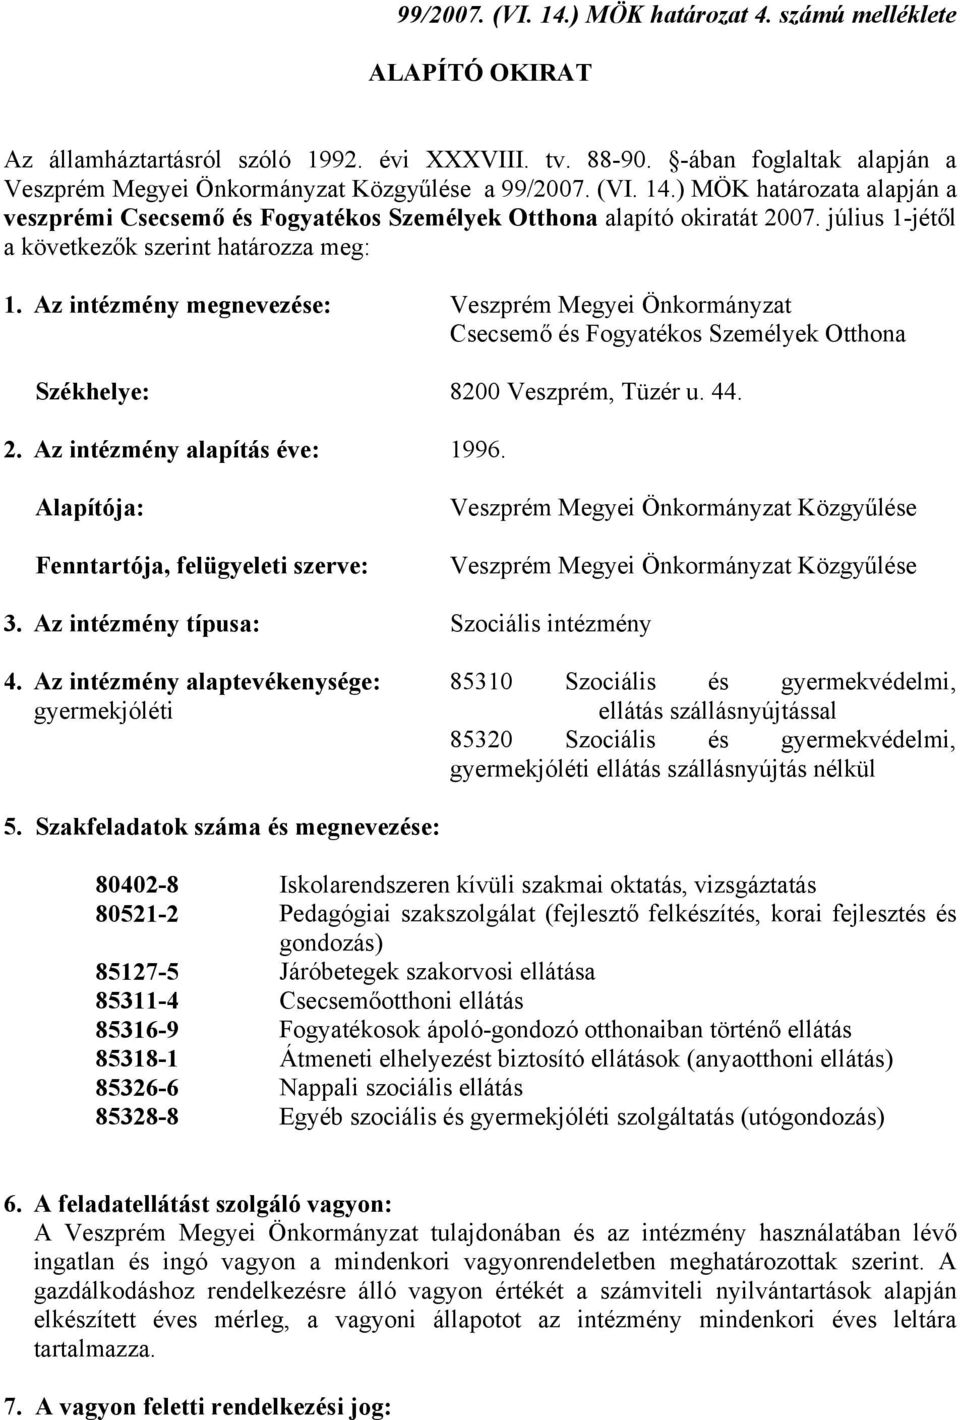 július 1-jétől a következők szerint határozza meg: 1. Az intézmény megnevezése: Veszprém Megyei Önkormányzat Csecsemő és Fogyatékos Személyek Otthona Székhelye: 8200 Veszprém, Tüzér u. 44. 2.